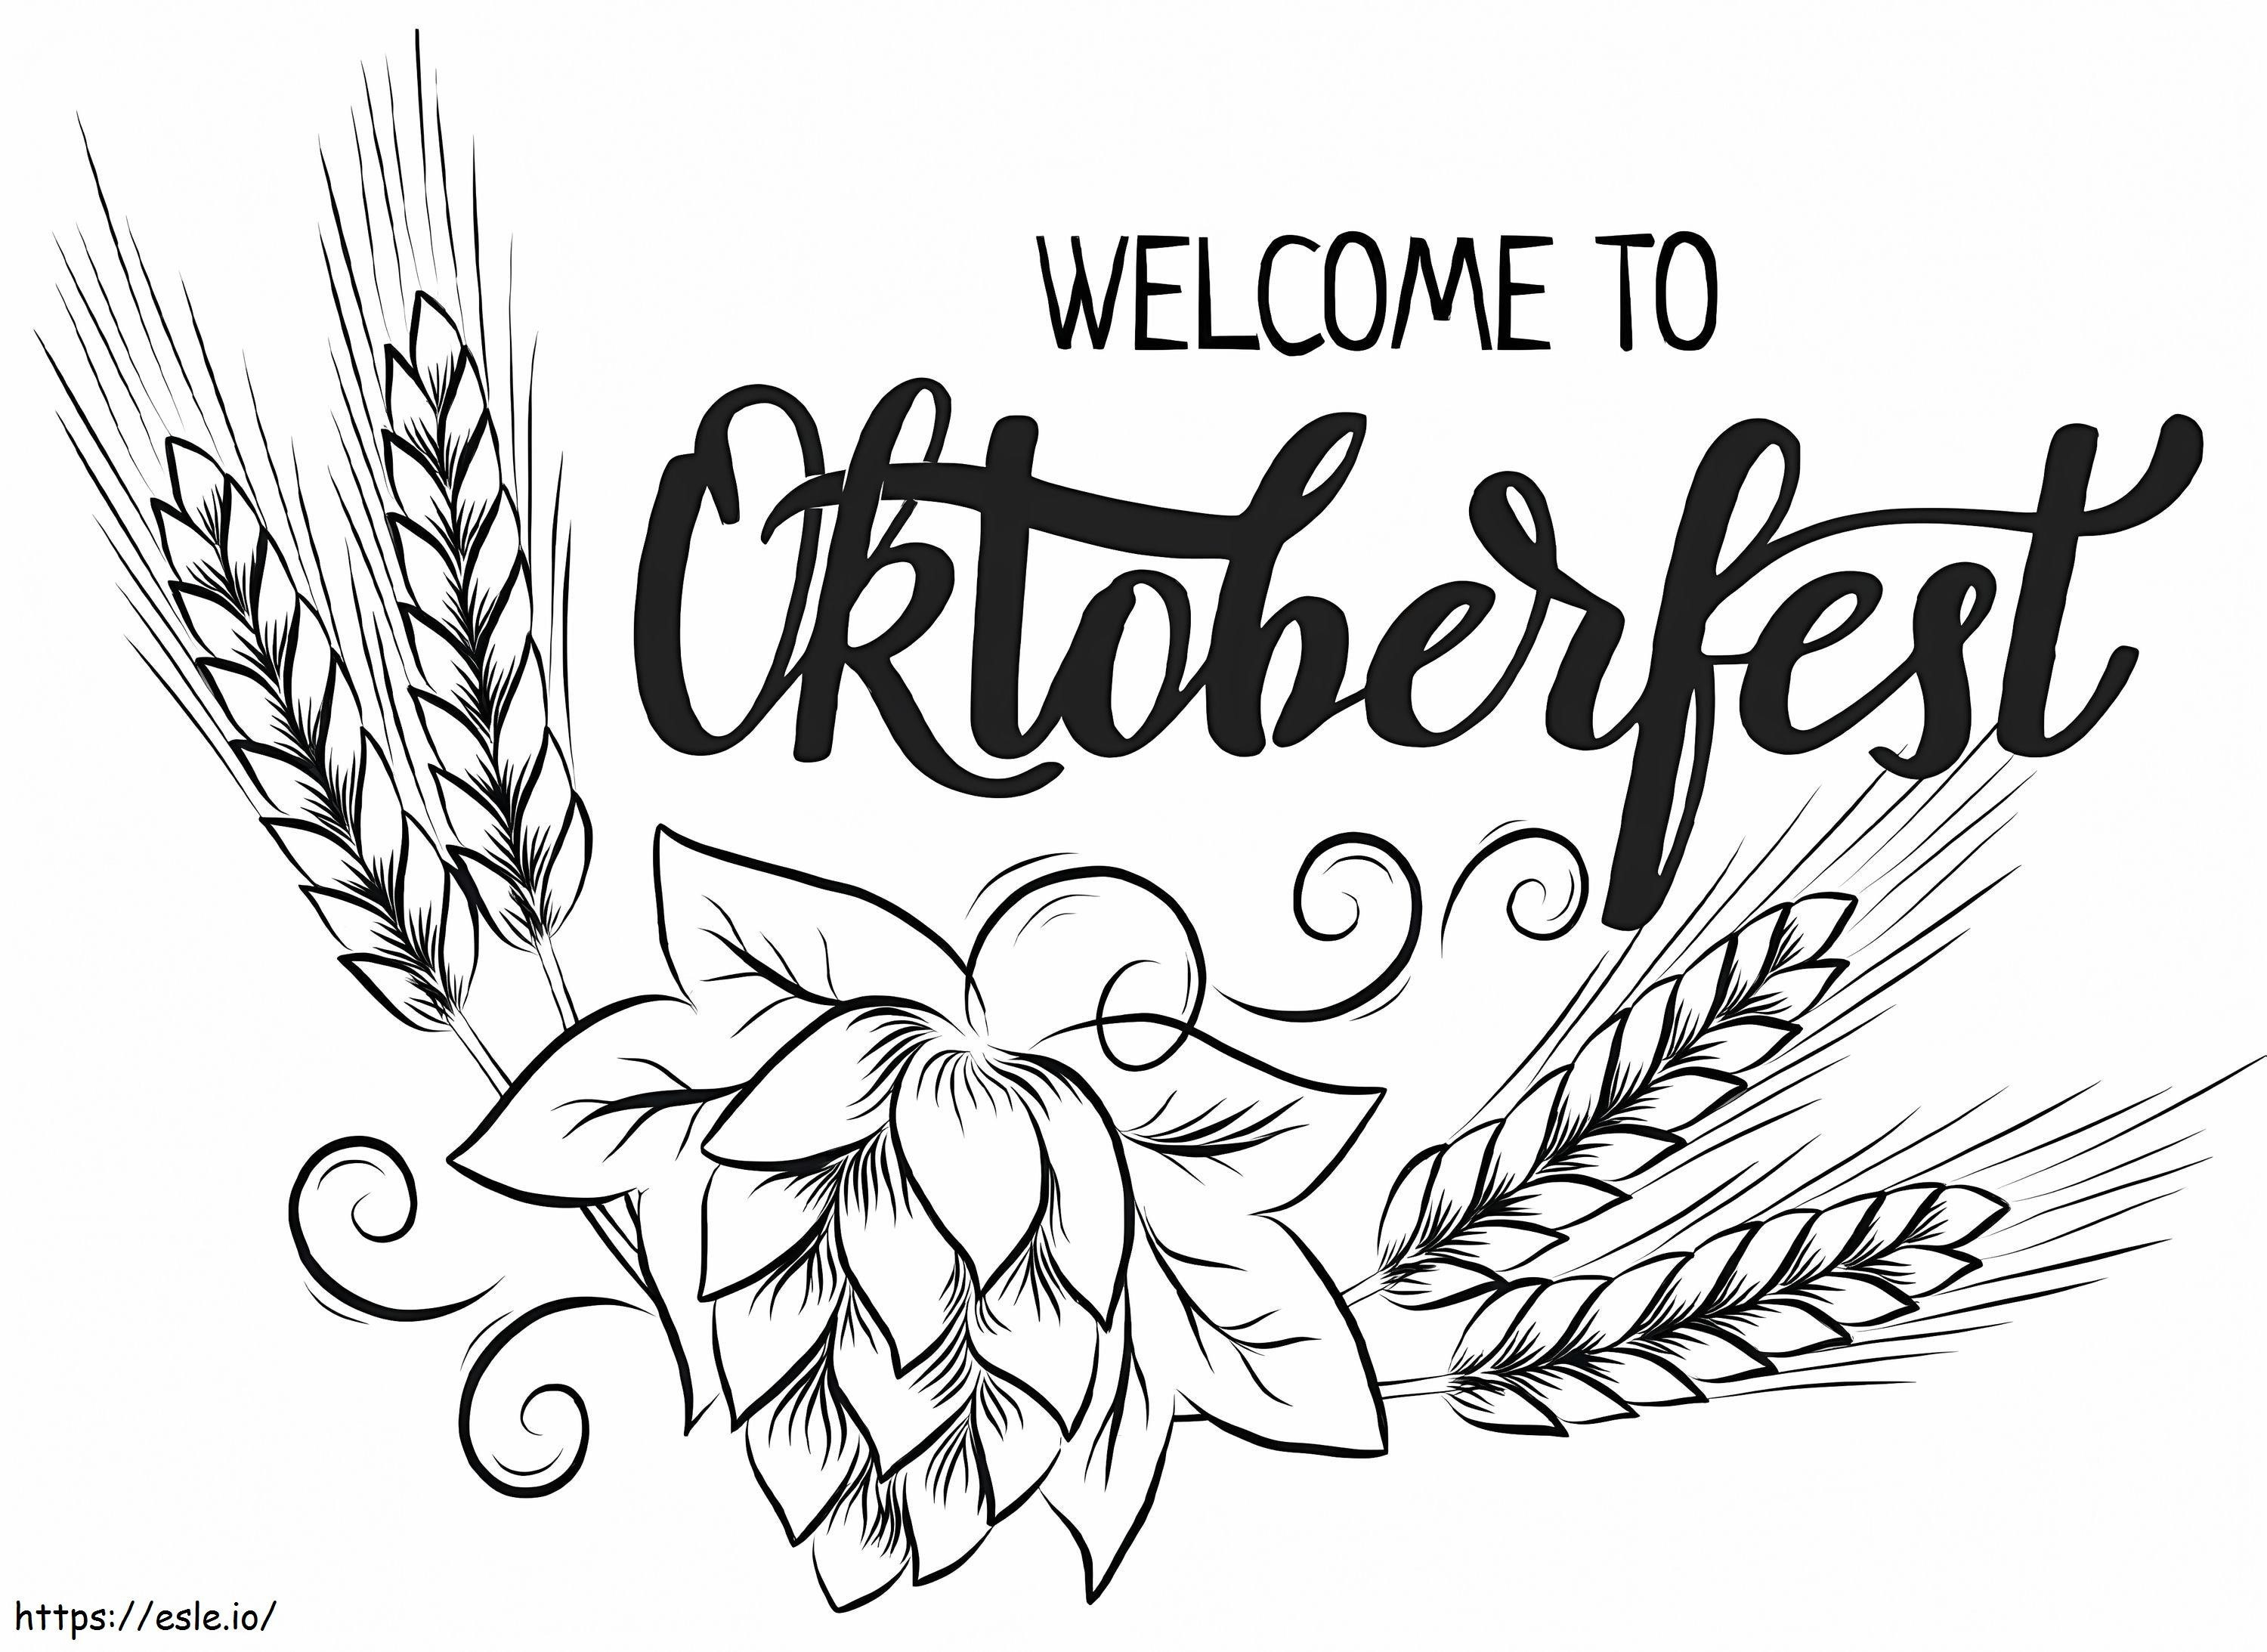 Bienvenido al Oktoberfest para colorear